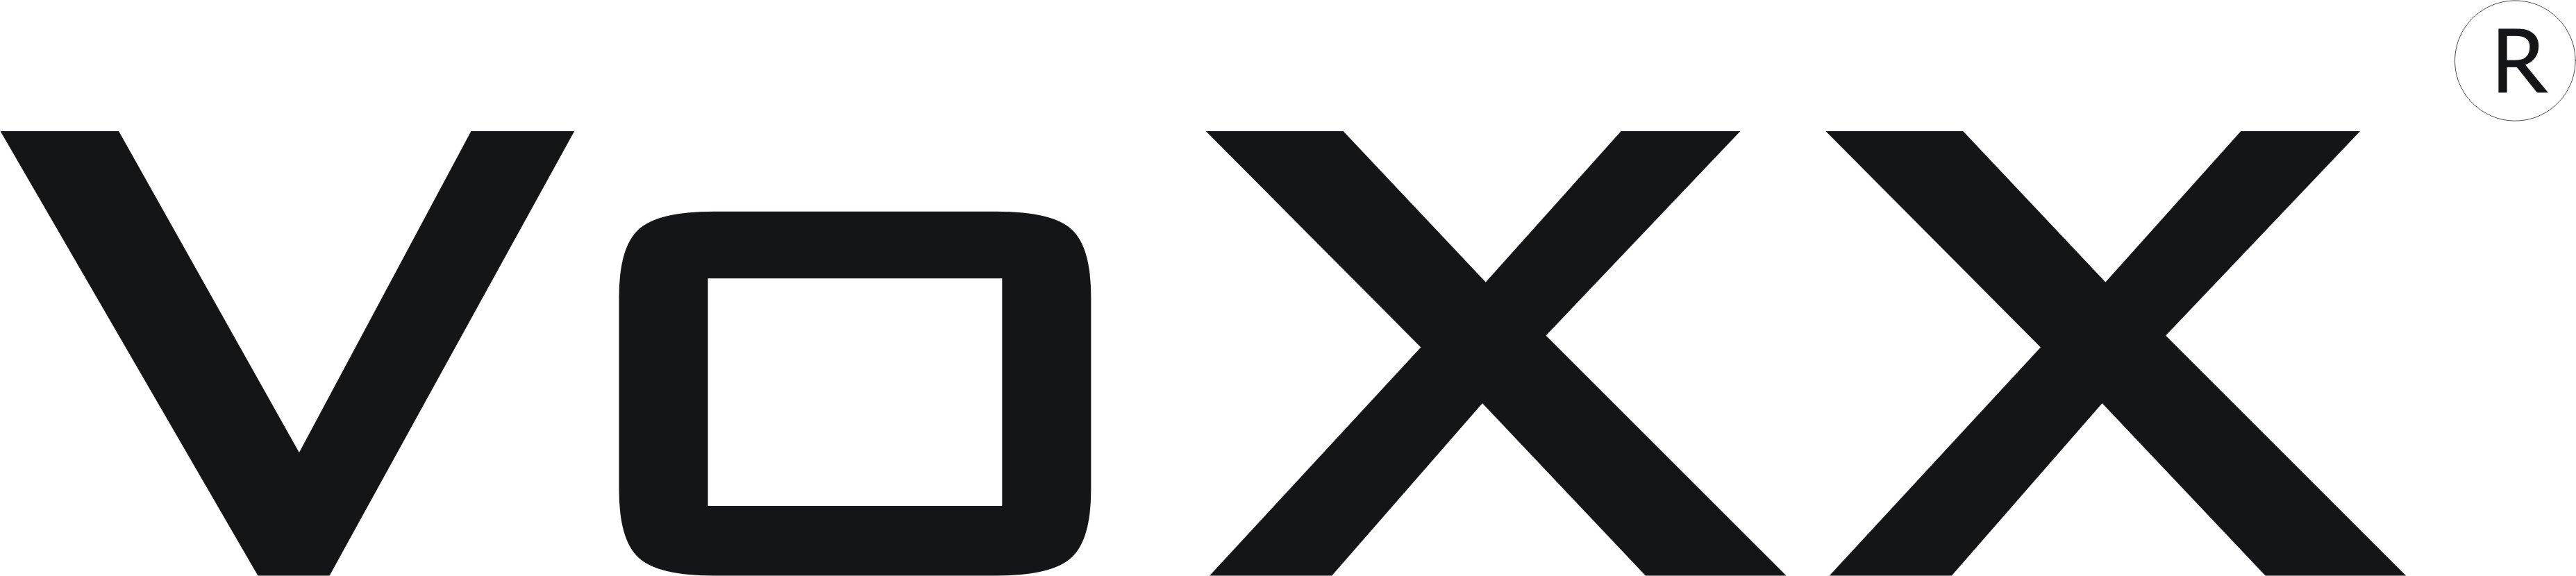 VoXX